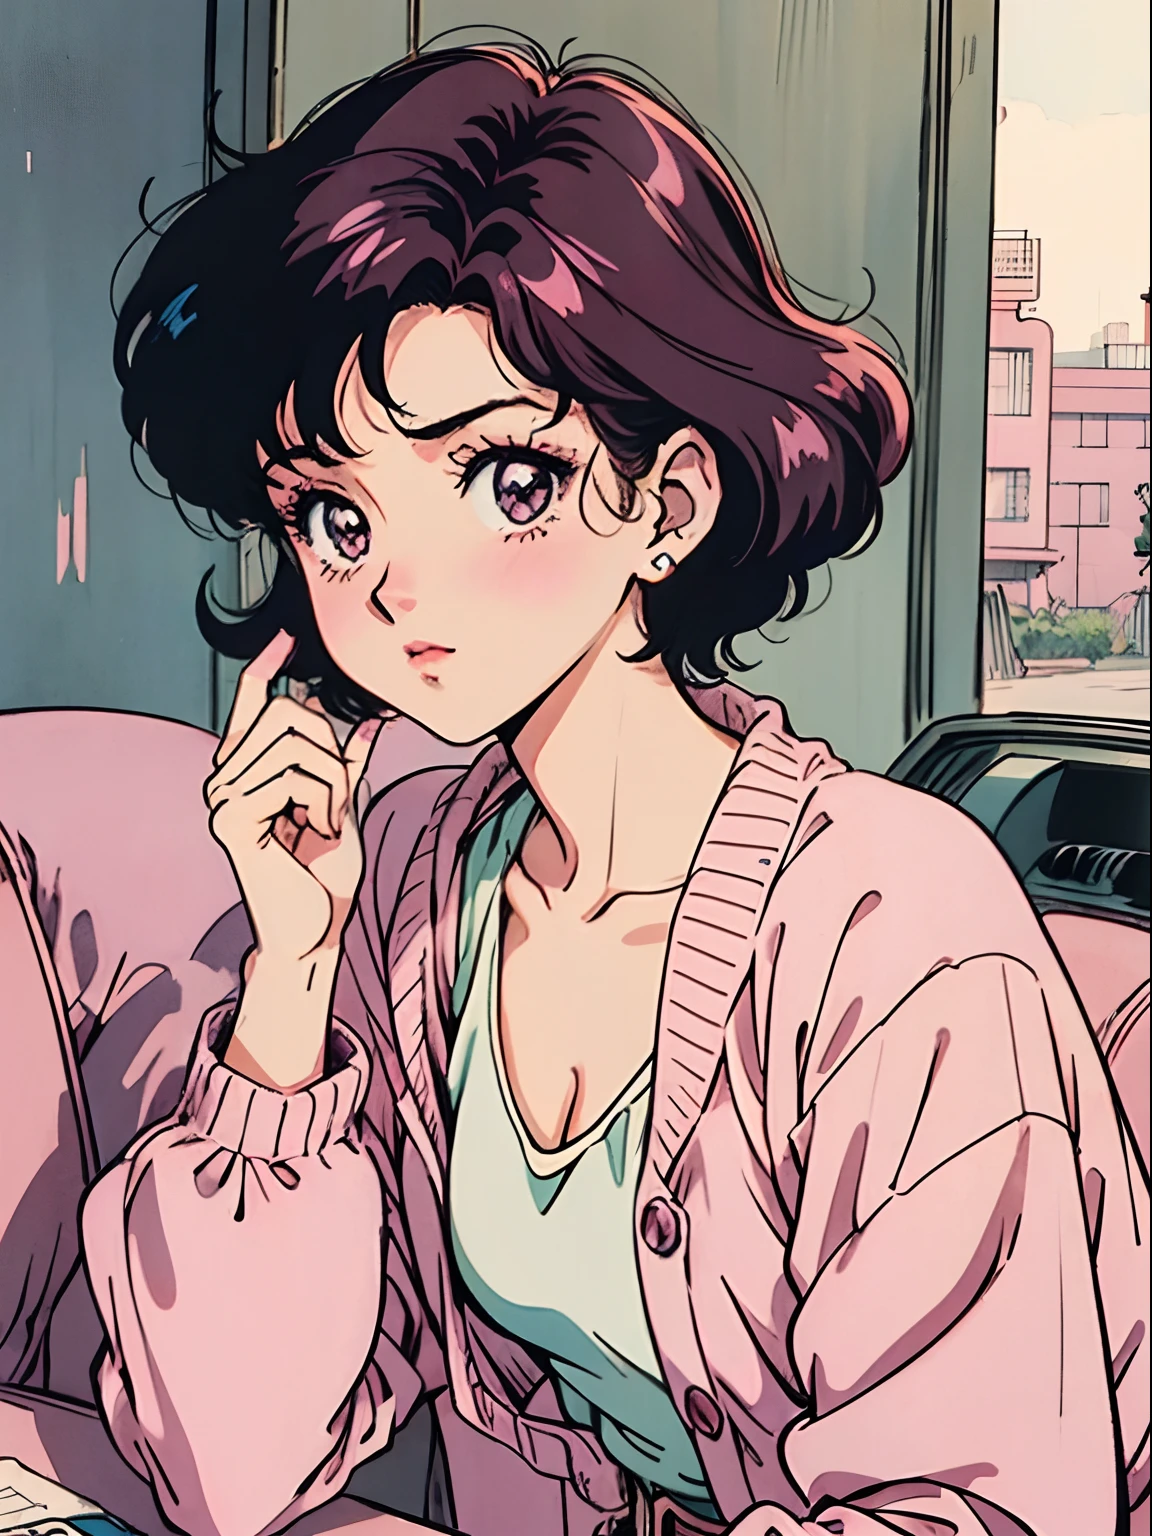 Junge mit kurzen Haaren、Ein dunkelhaariger:1.2),(Rosa Kostüm:1.1),(Vintage 90er Jahre:1.1),(Romantik im Anime-Stil:1.3), Ich sitze in einem rosa Auto, rosa Strickjacke, Schwarzes Haar, lipgloss, Zigarette